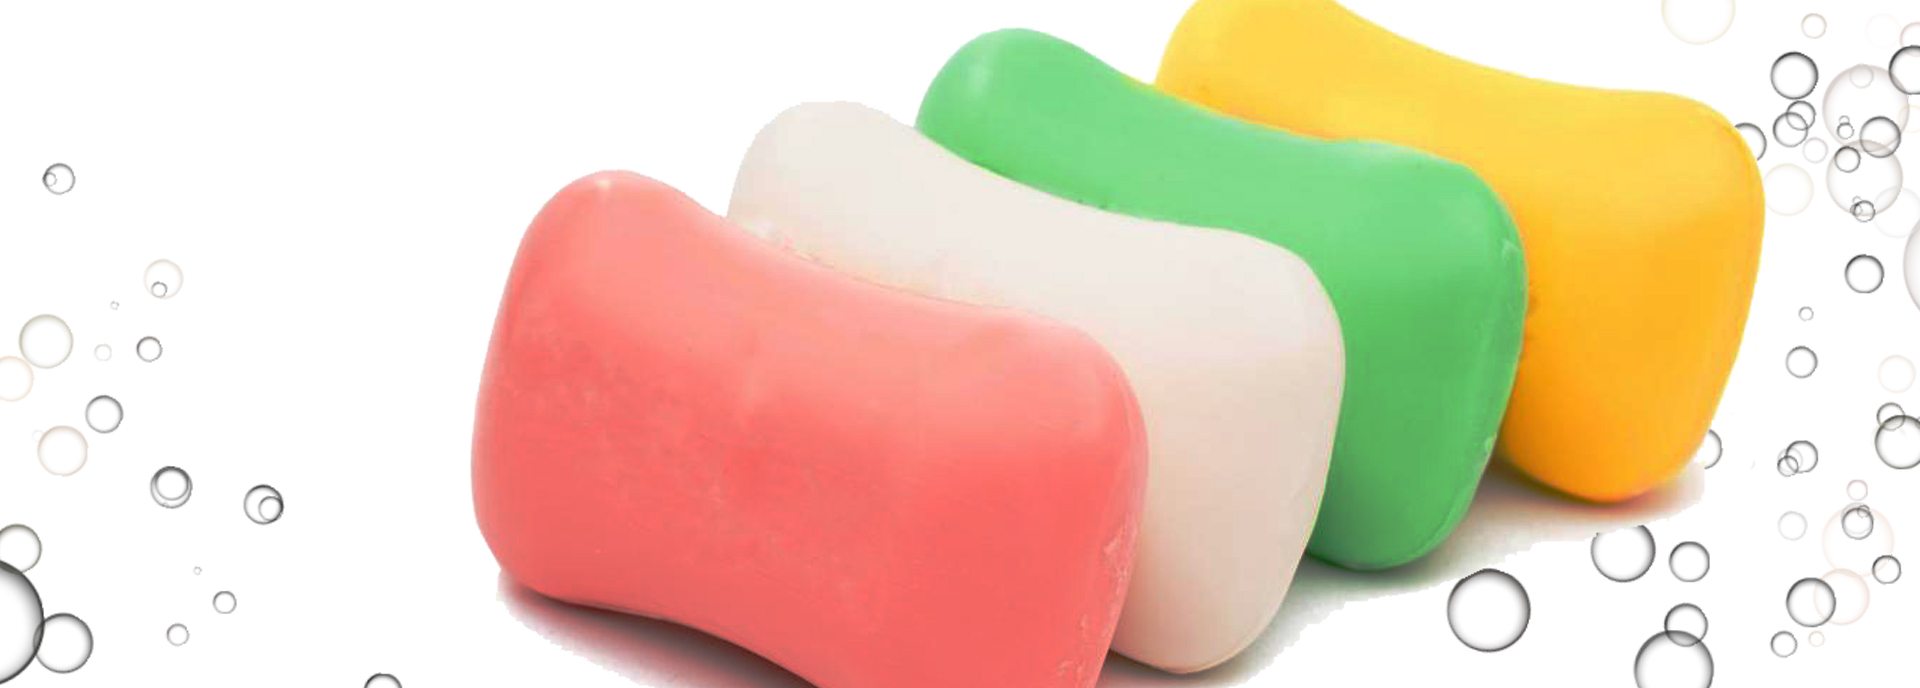 Soap Detergent Dyes Manufacturer Supplier Exporter